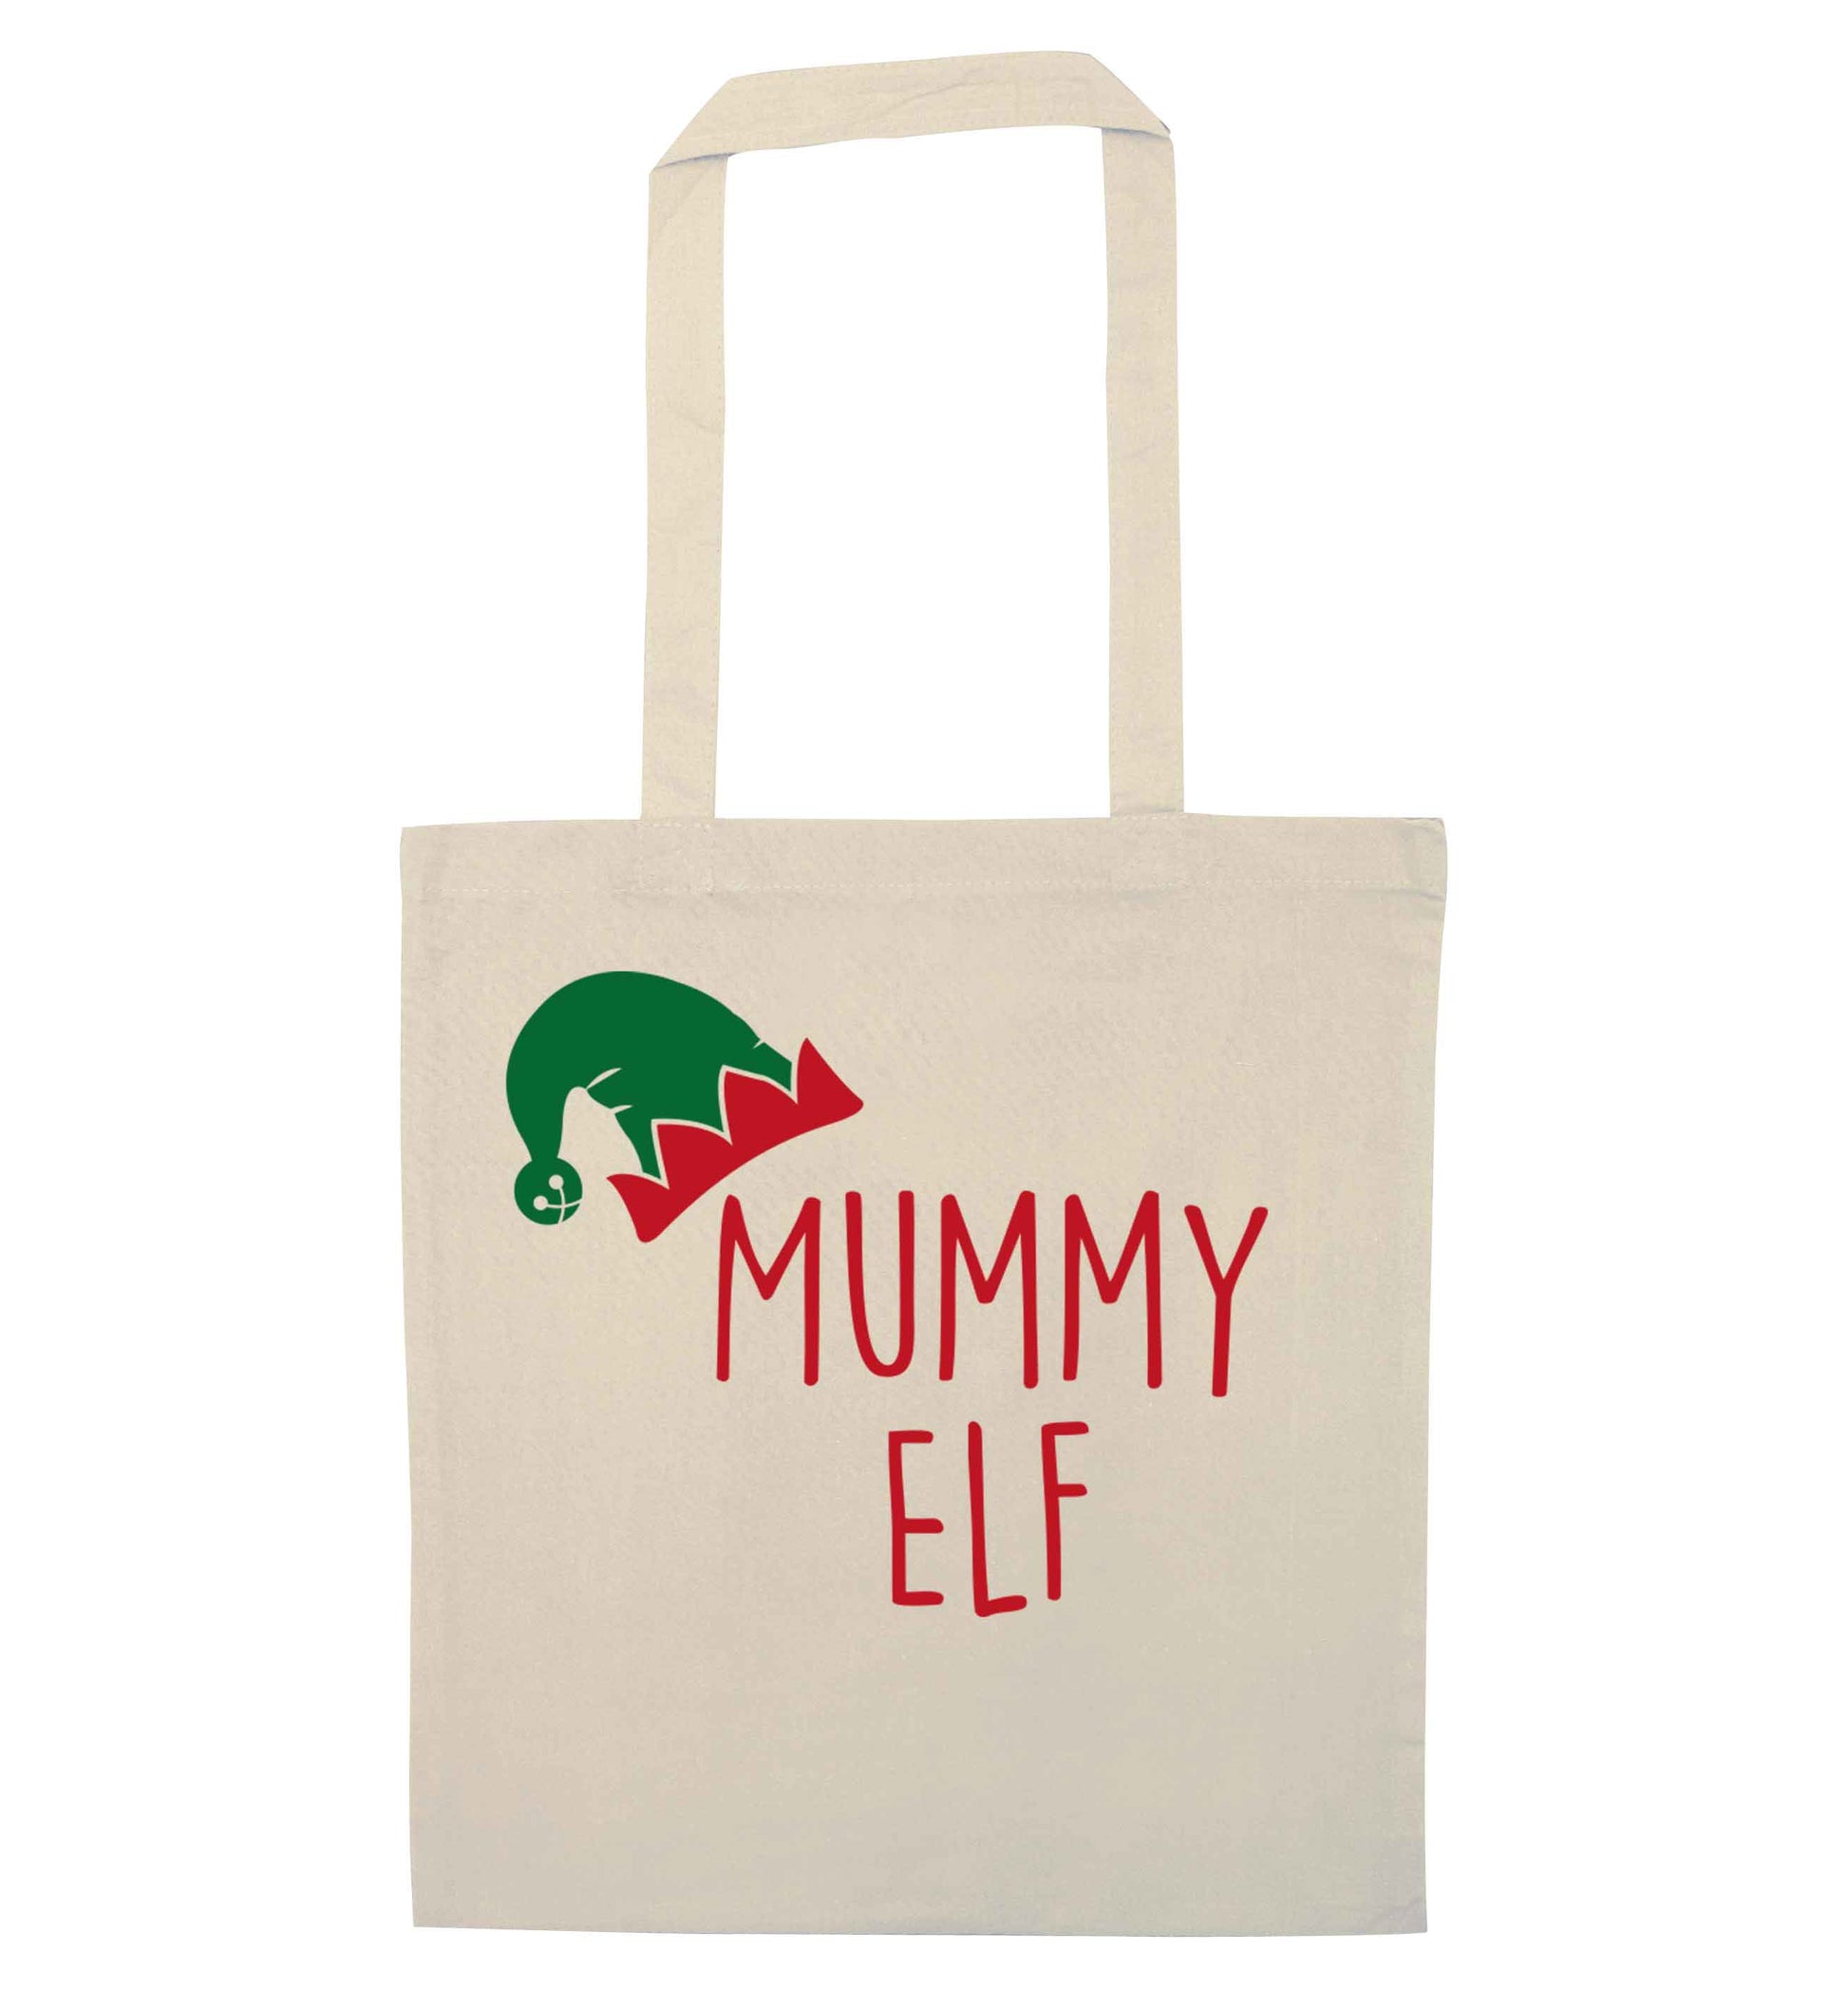 Mummy elf natural tote bag